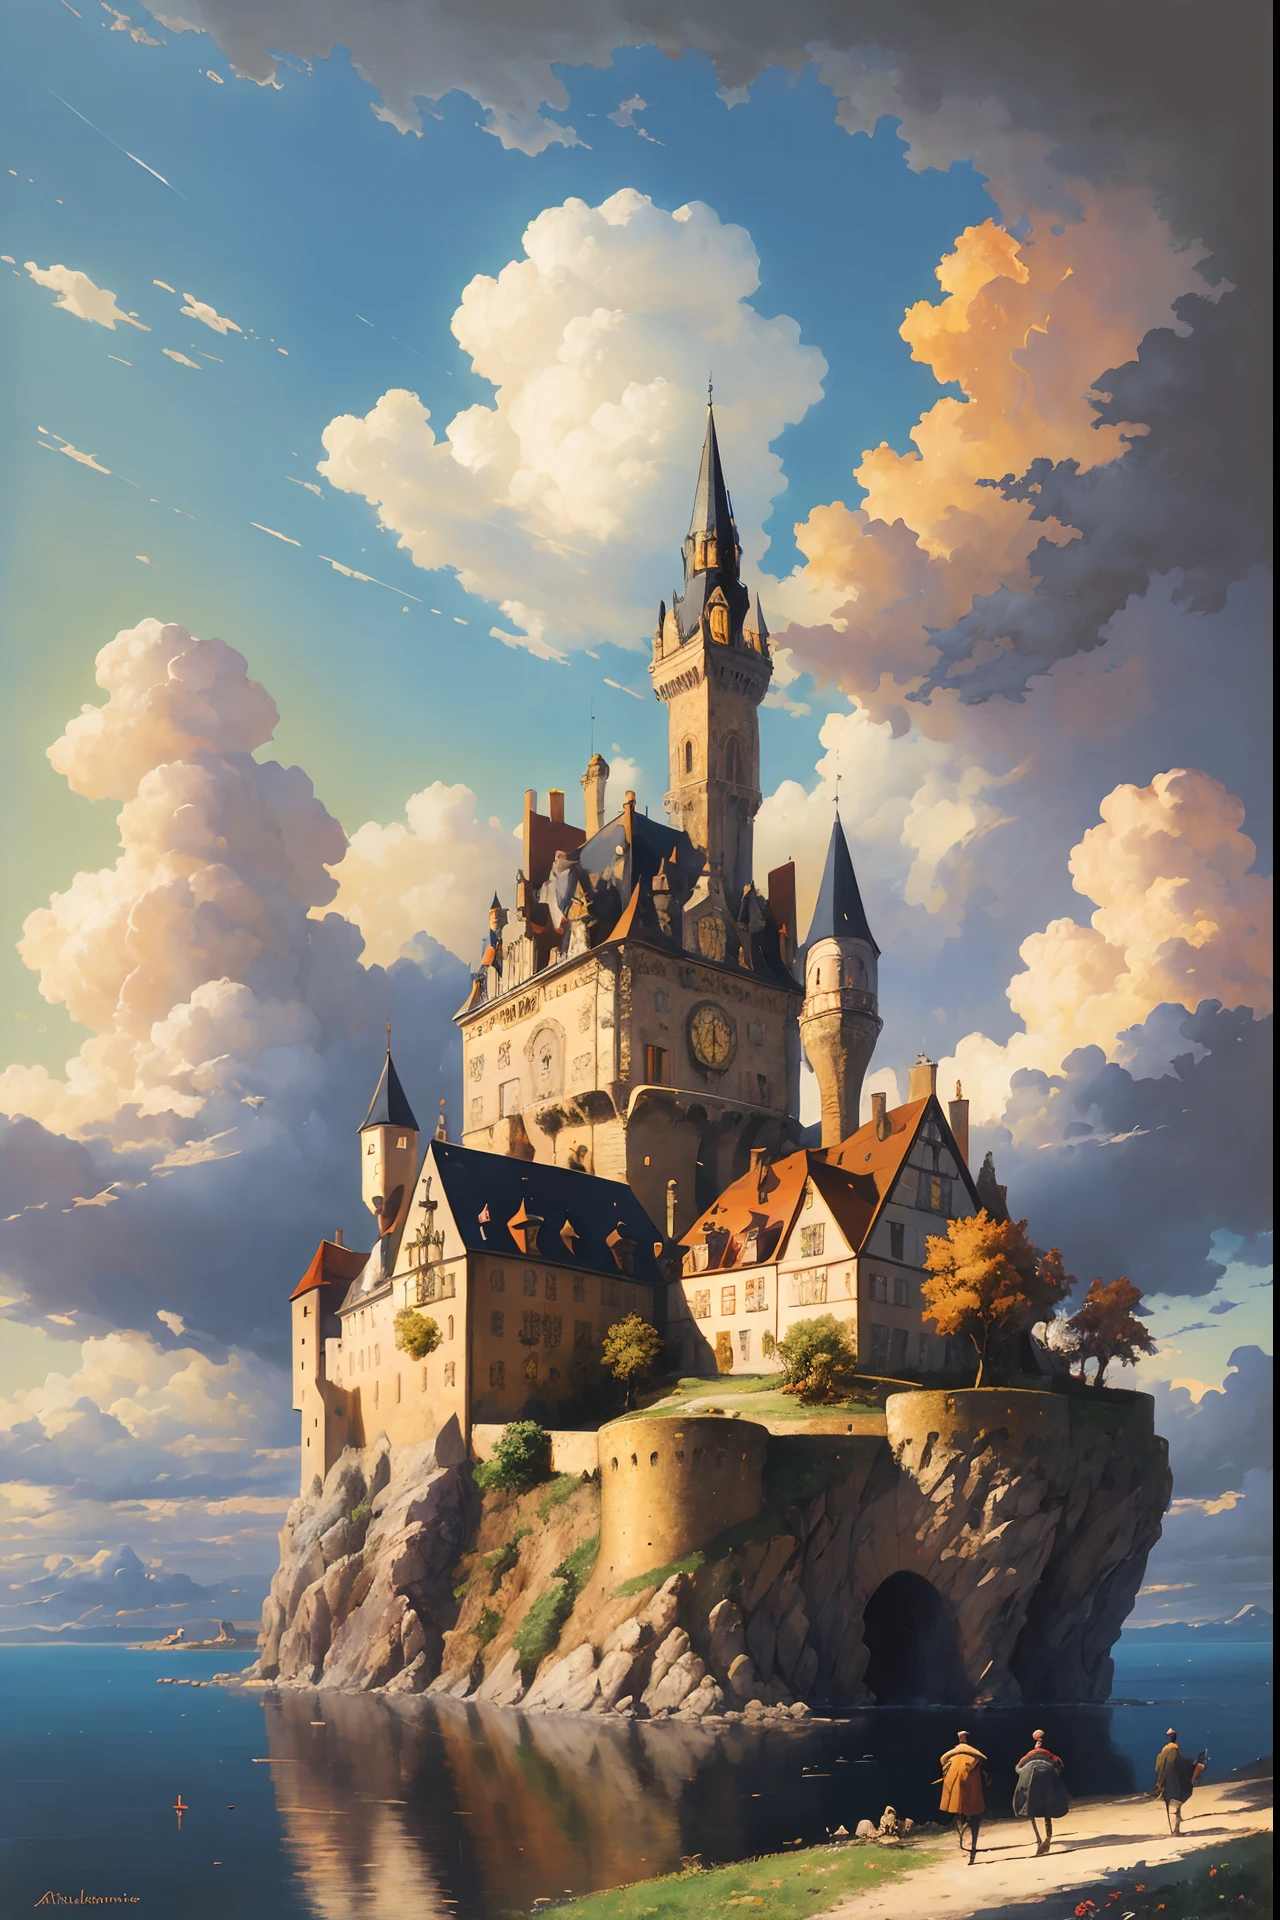 traumhafte Kunst absurdes hochauflösendes Meisterwerk beste Qualität Alois Arnegger Antoine Blanchard Stadt Schloss Wald Meer Himmel Wolken